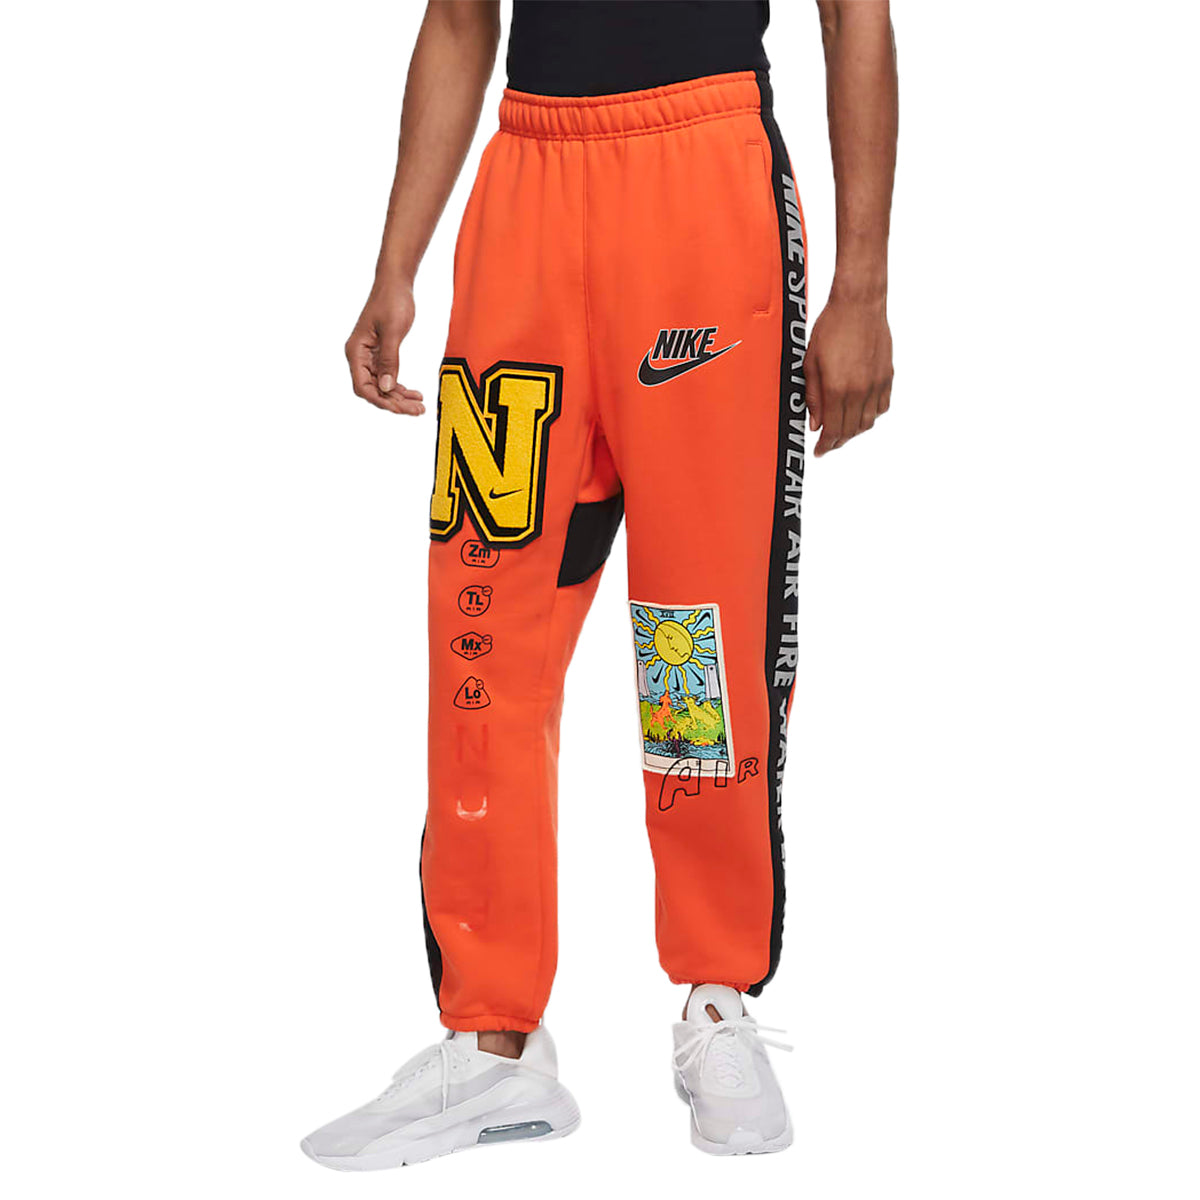 Nike Sportswear Pant Mens Style : Dc2723